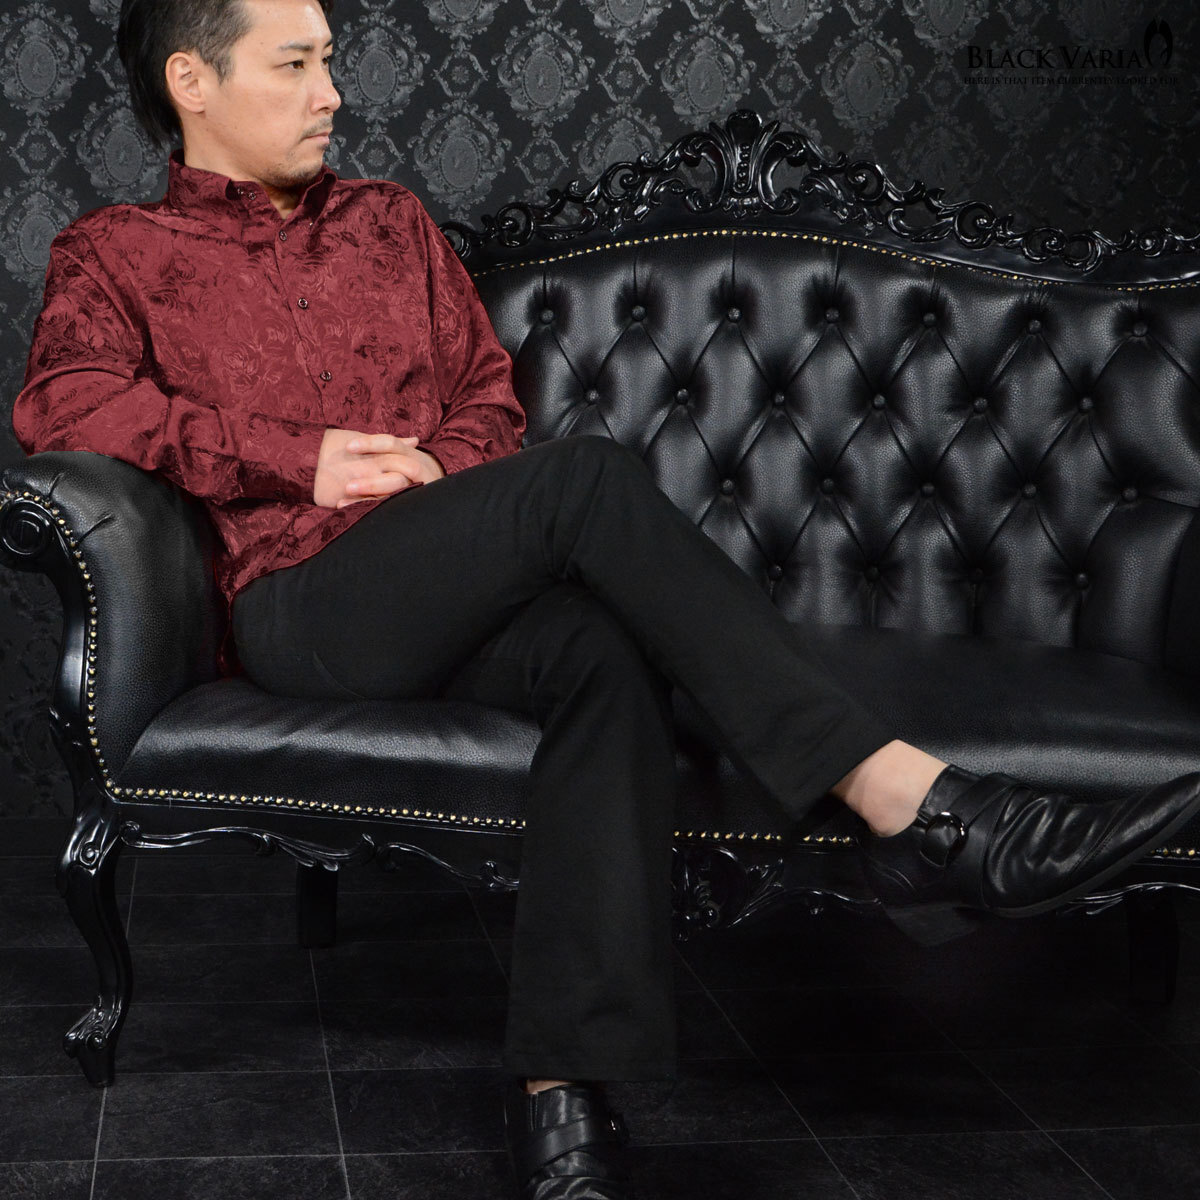 a161222-win BlackVaria ドゥエボットーニ 花柄 薔薇 ジャガード レギュラーカラー サテン ドレスシャツ メンズ(ワインレッド赤) L 上品_画像6